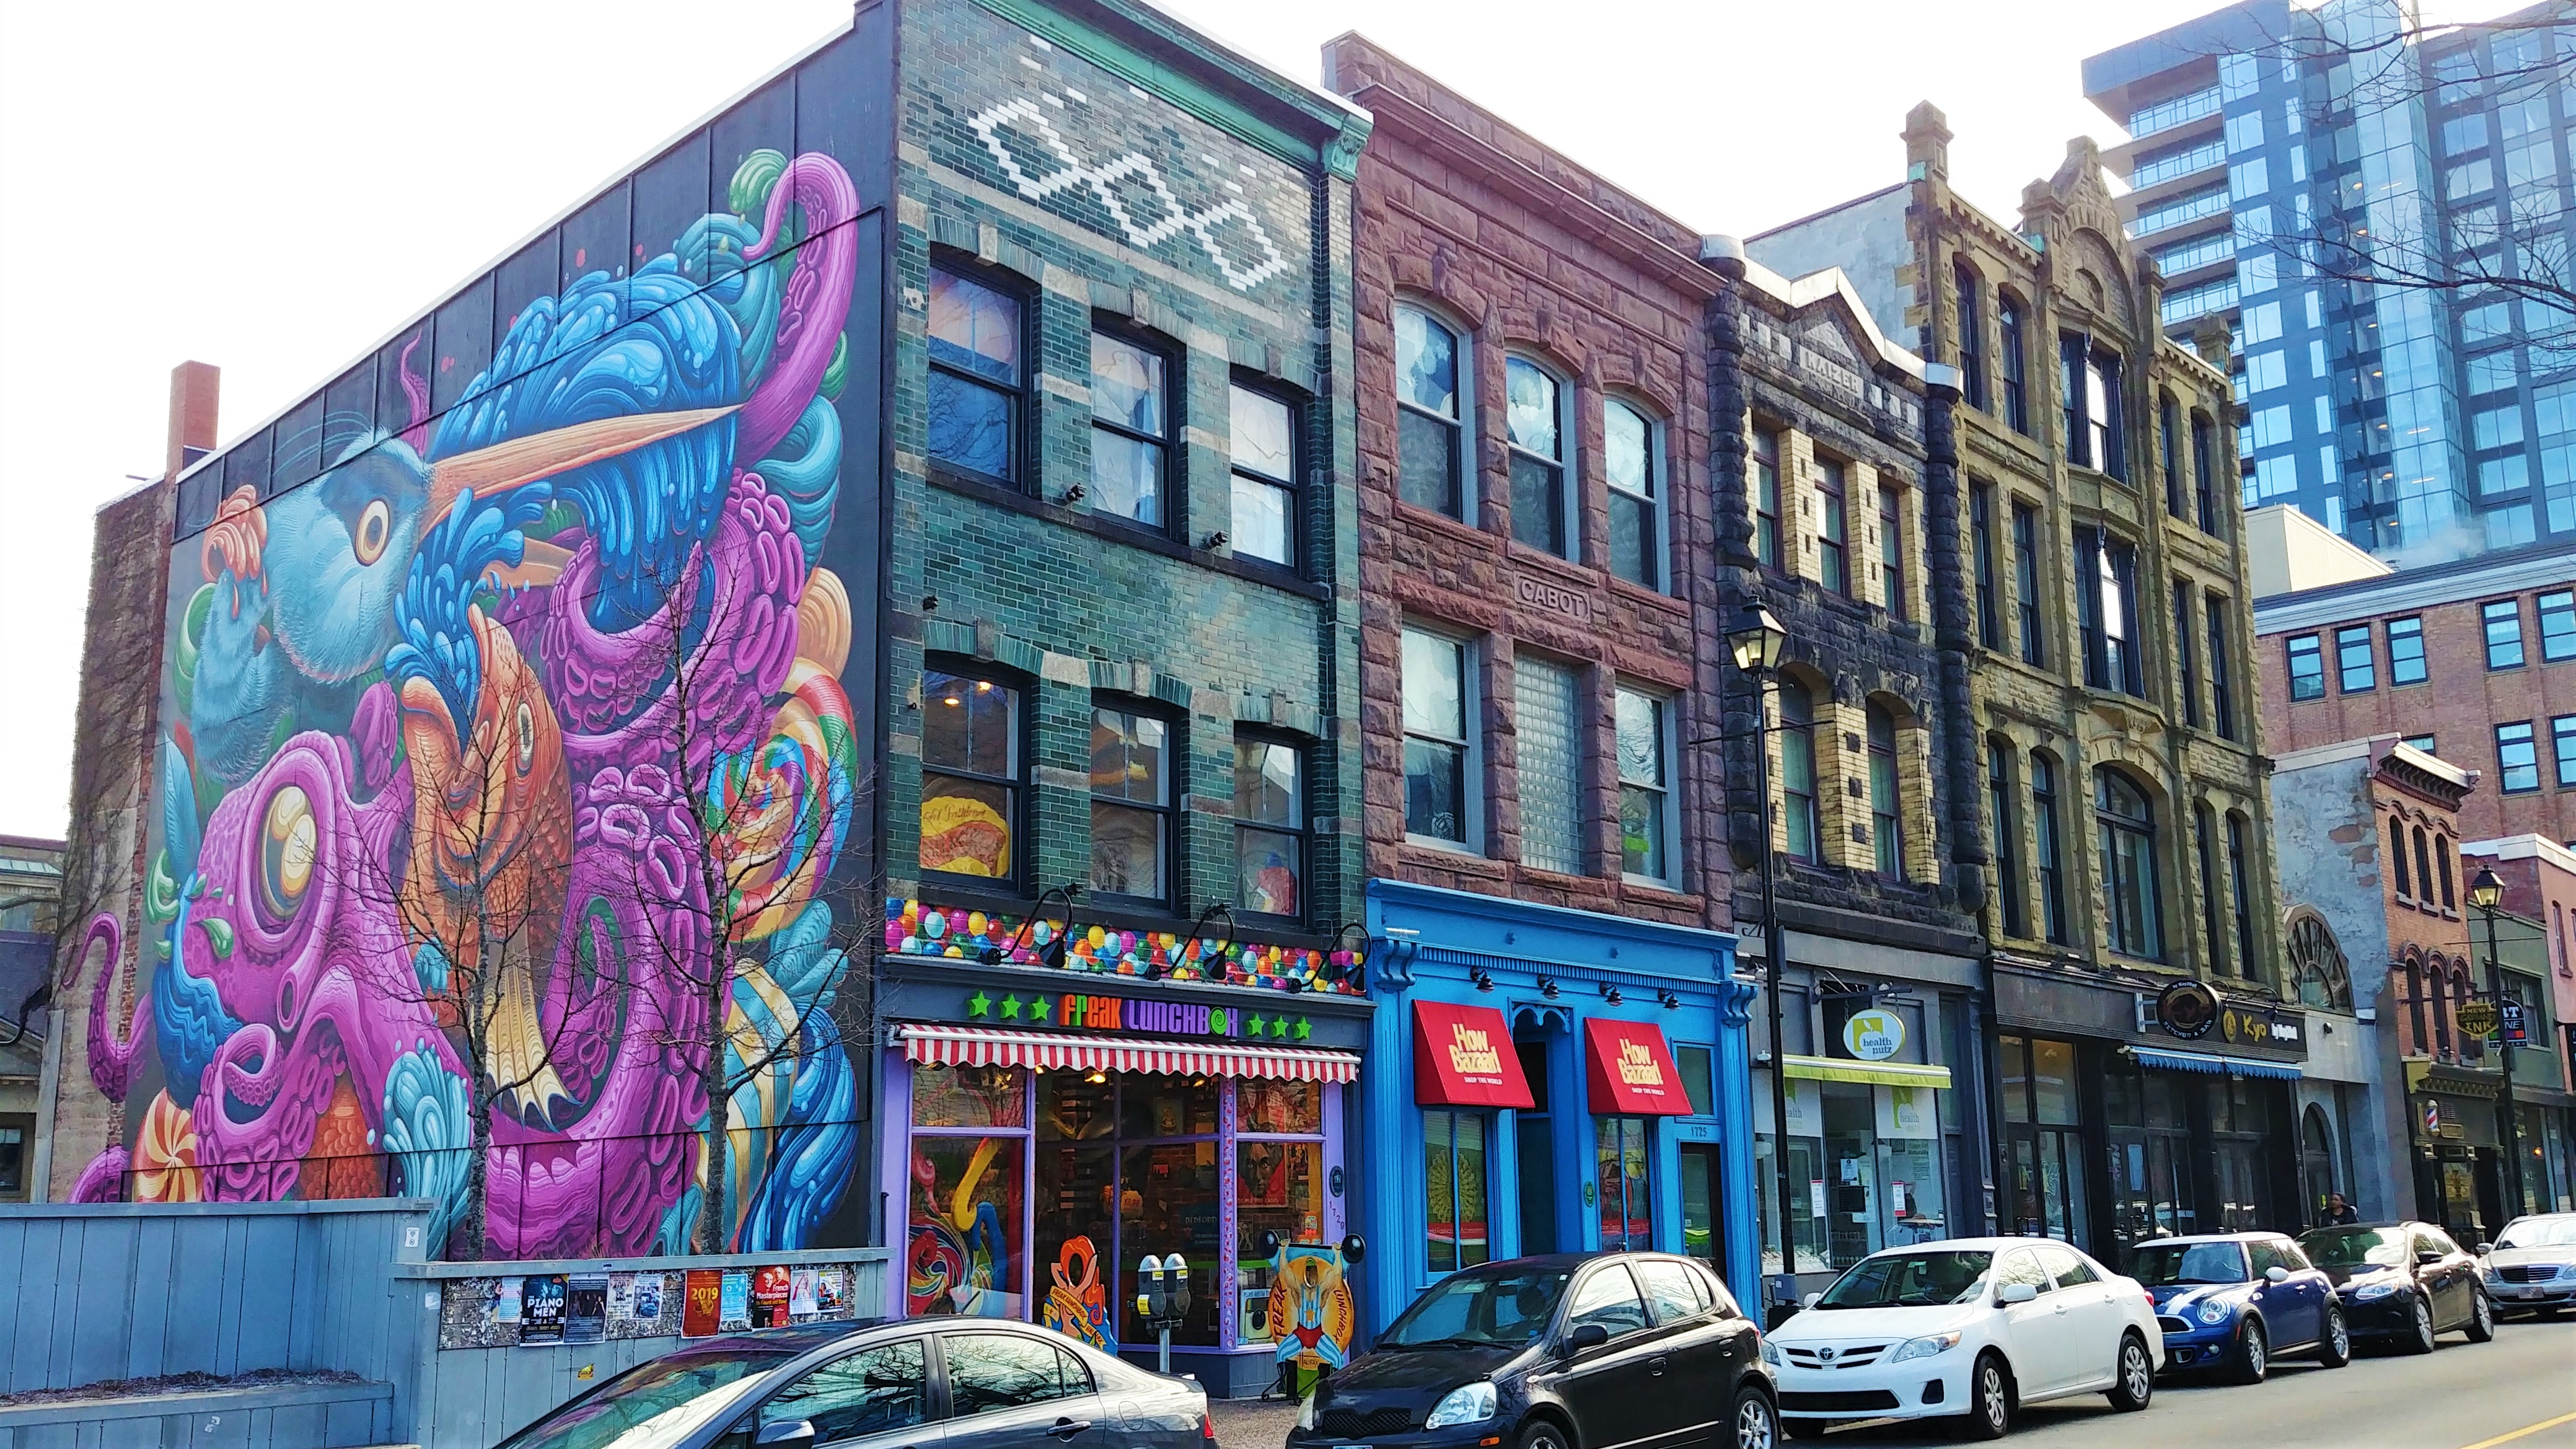 Halifax street art centre-ville que voir escapade voyage nouvelle-ecosse canada